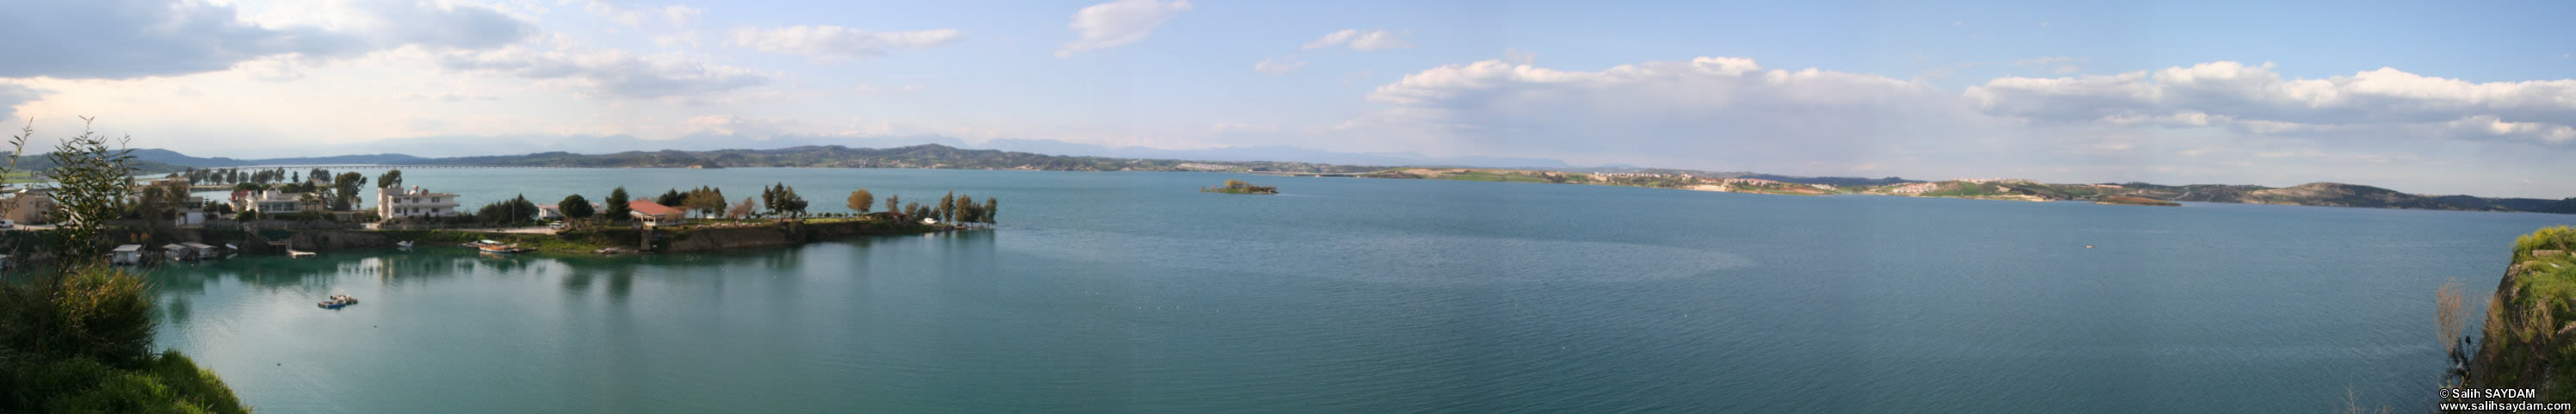 Adana'nn kuzeyinde Seyhan nehri zerinde kurulu bulunan Hidroelektrik Seyhan Baraj'nn panoramas #01